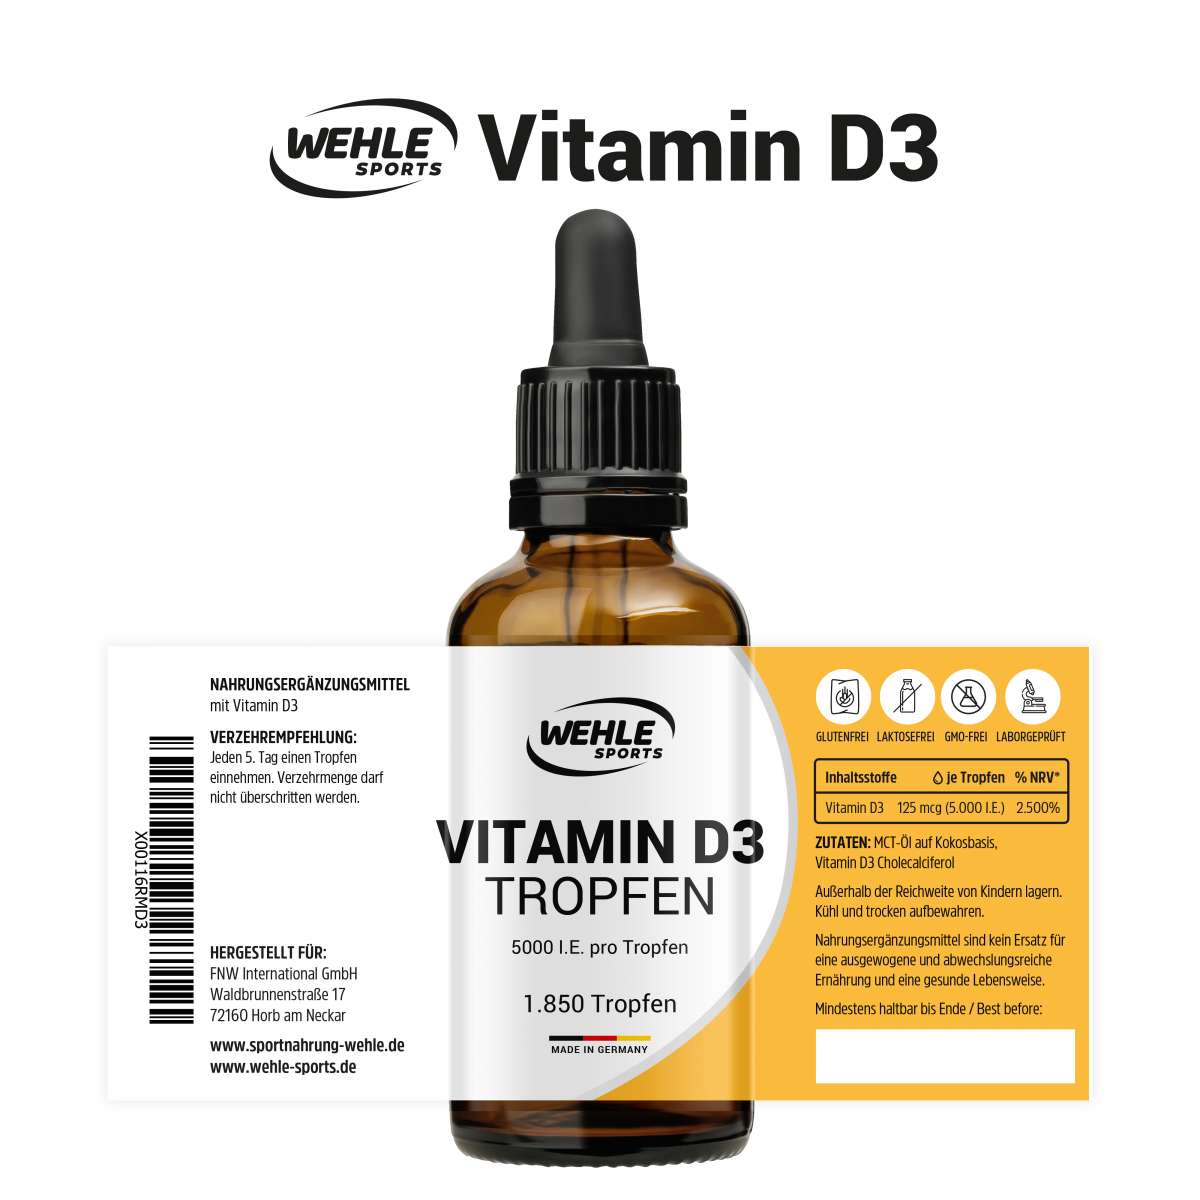 Wehle Sports Vitamin D3 5000 IE pro Tropfen hochdosiert - 50ml (1850 Tropfen)